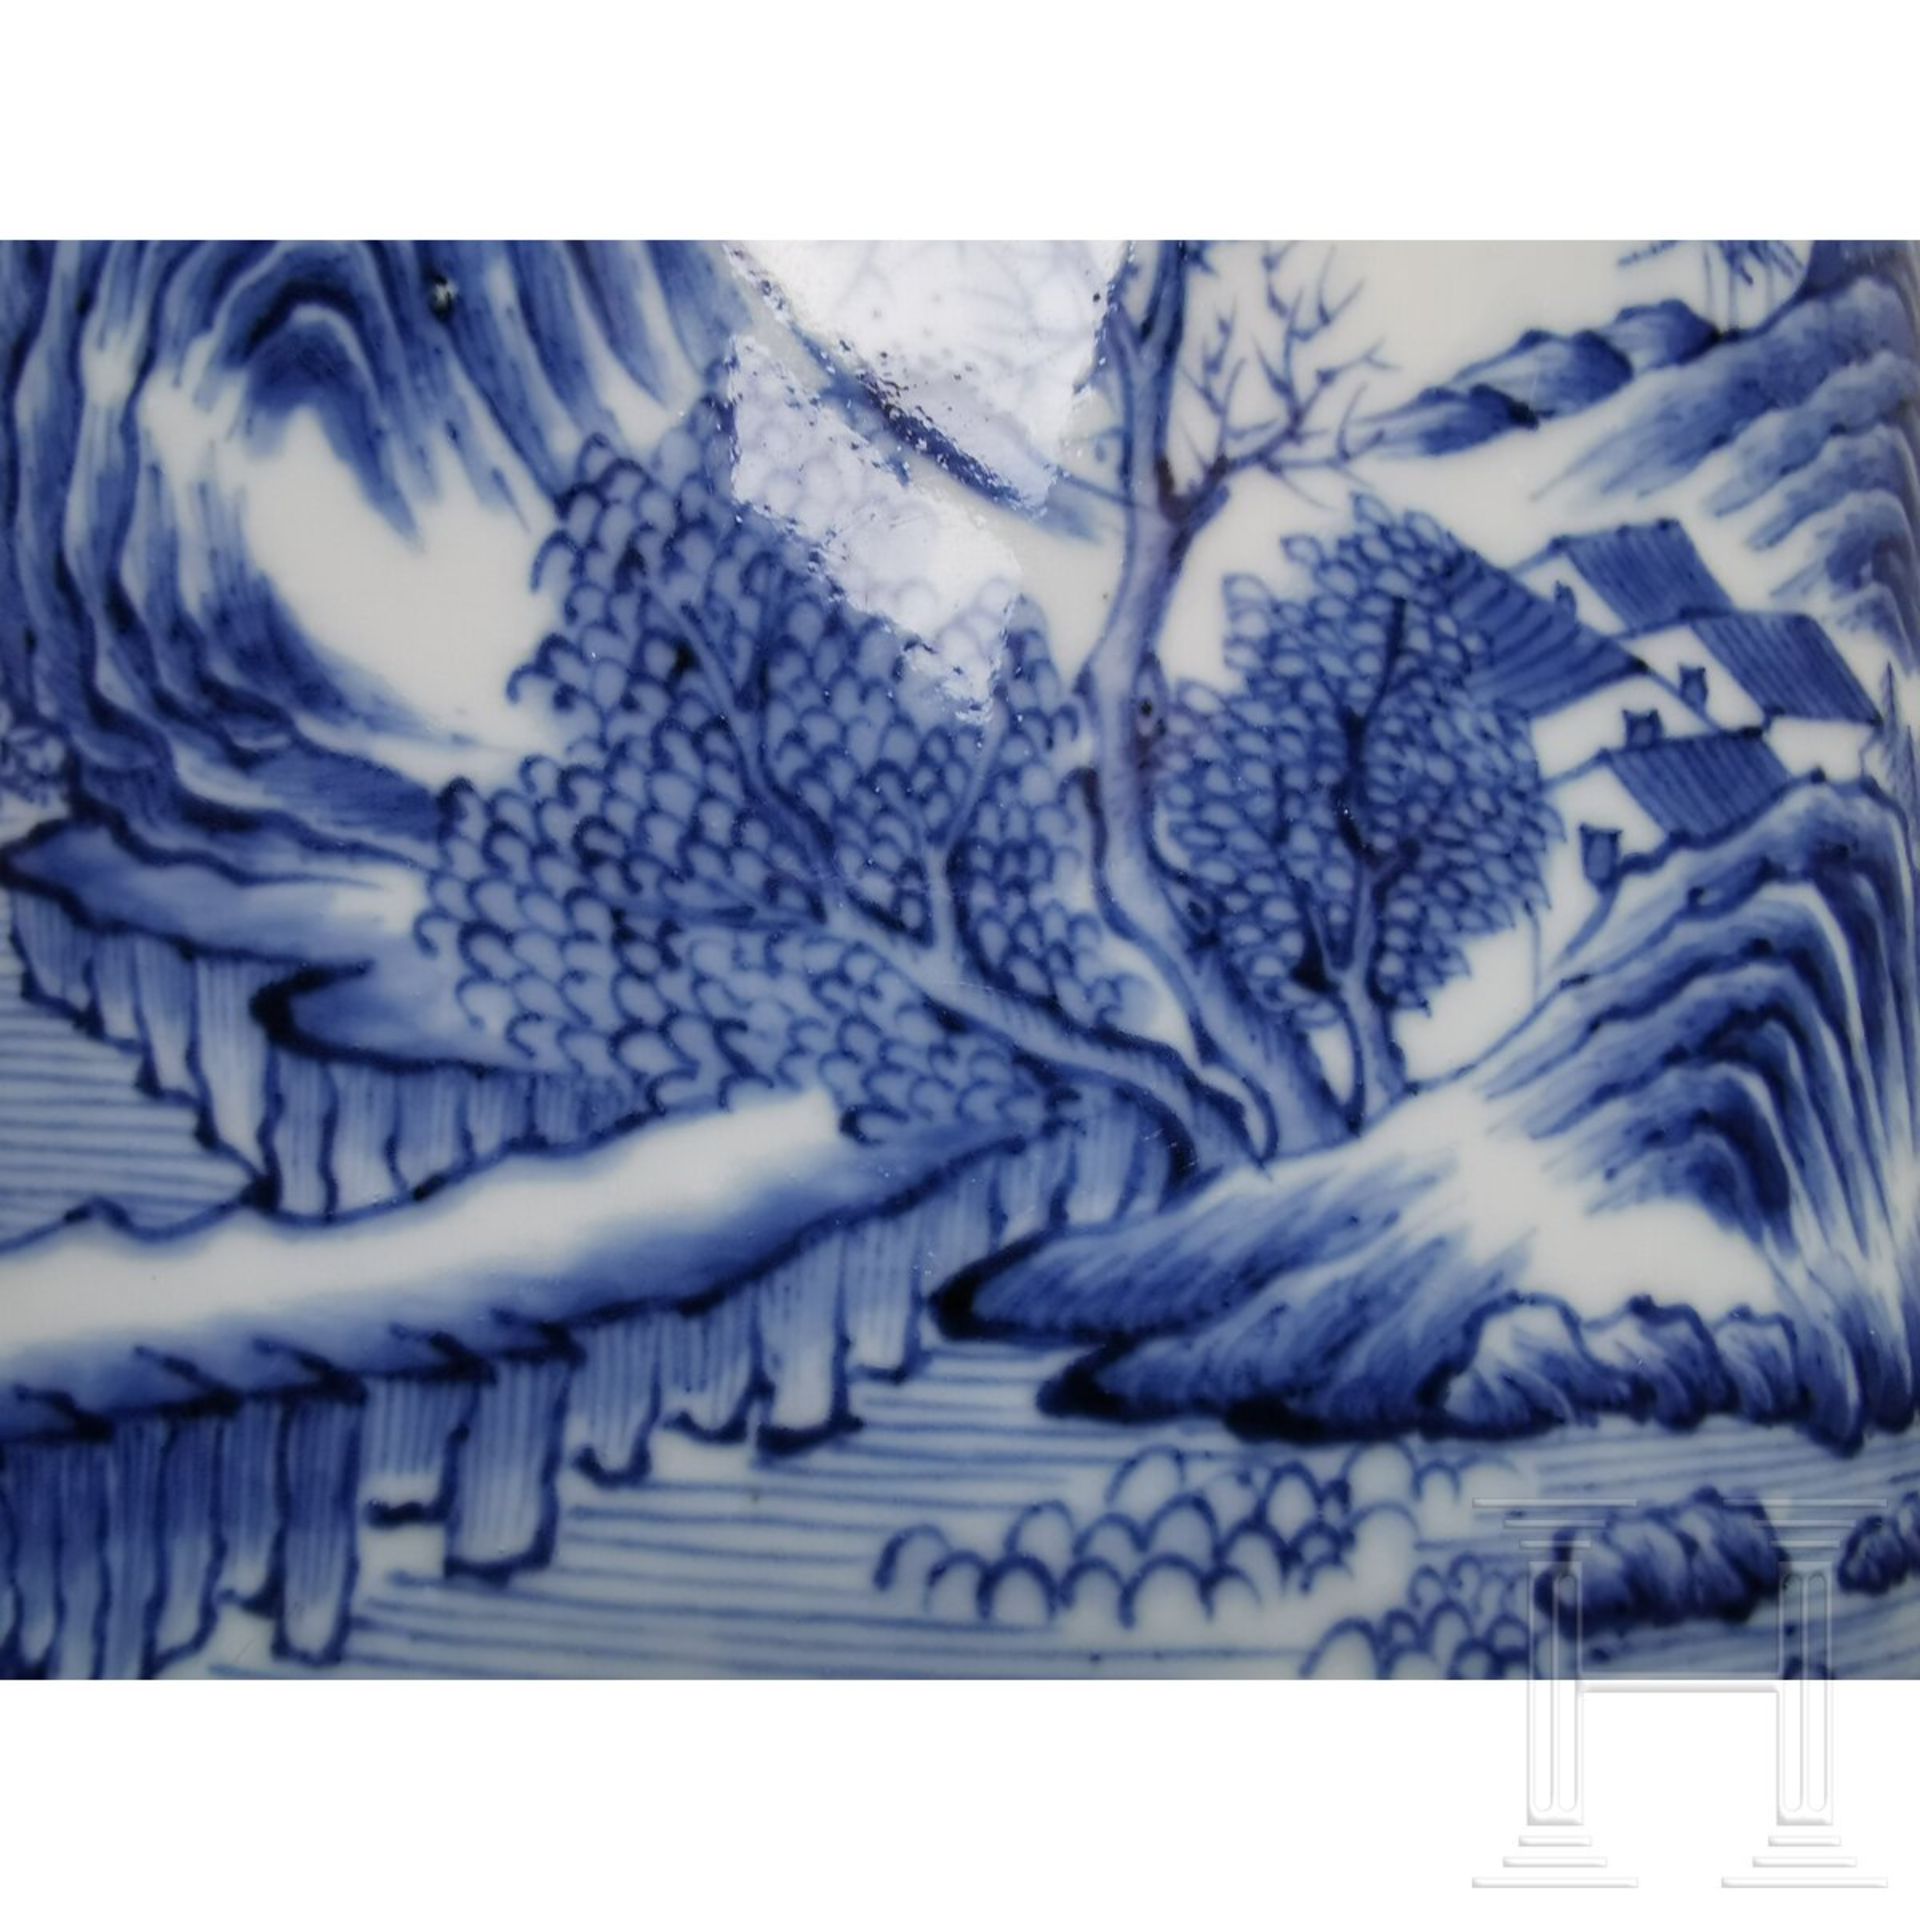 Großer blau-weißer Pinseltopf mit Berglandschaft, China, 19./20. Jhdt. - Bild 9 aus 16